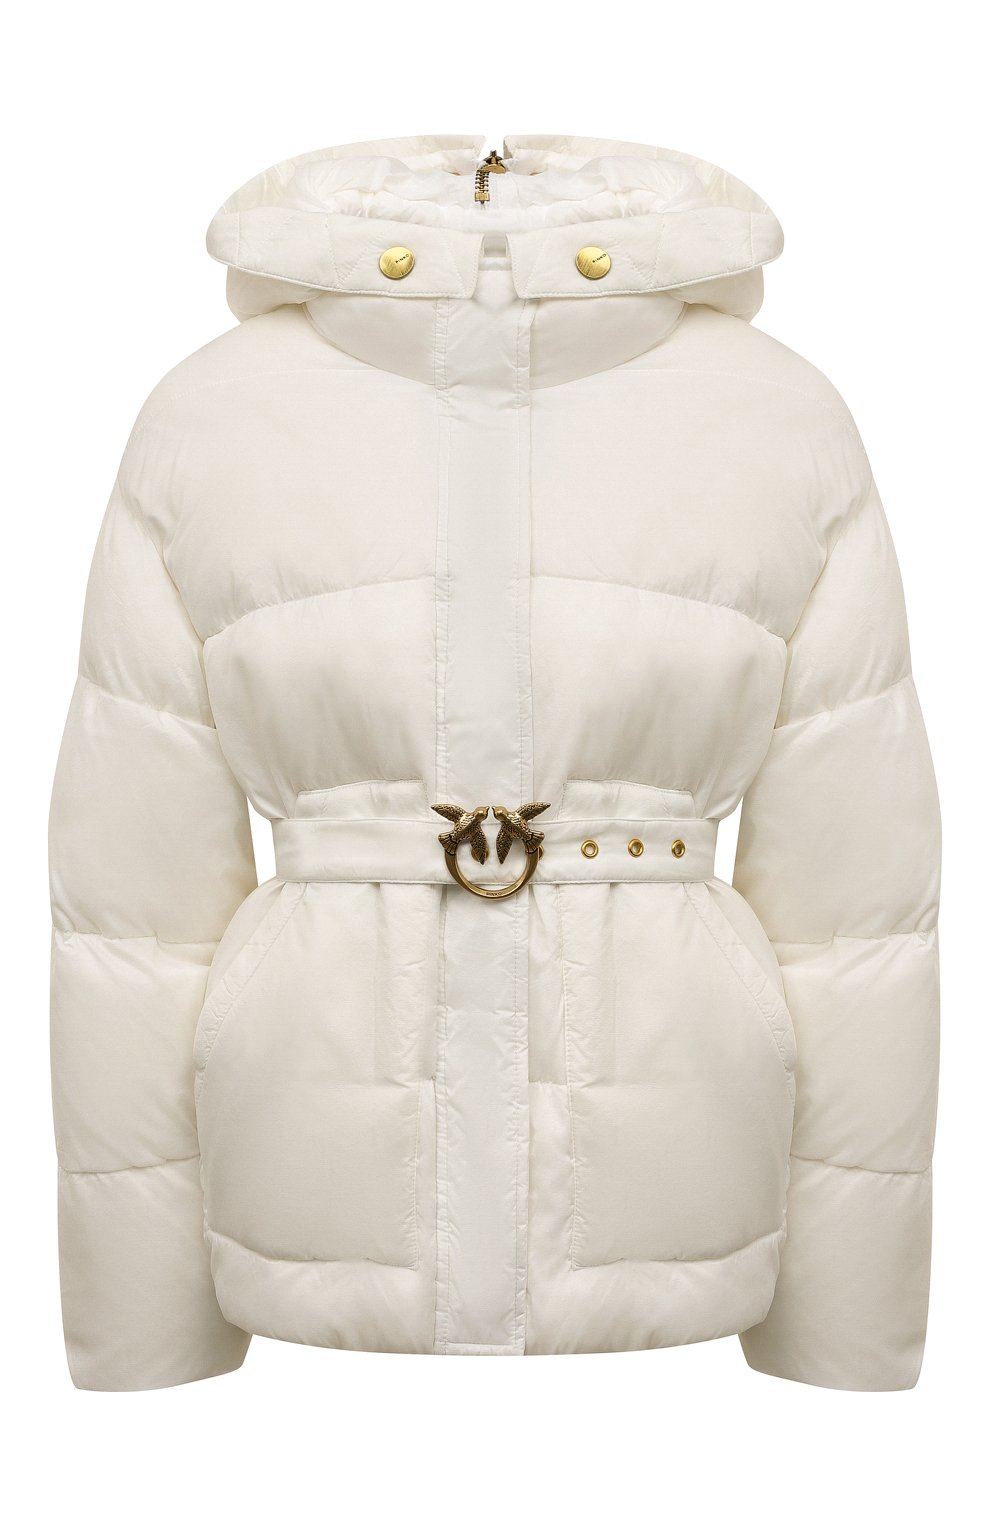 Куртки Pinko, Утепленная куртка Pinko, Китай, Белый, Полиамид: 100%; Подкладка-полиамид: 100%; Наполнитель-полиэстер: 100%;, 13025479  - купить